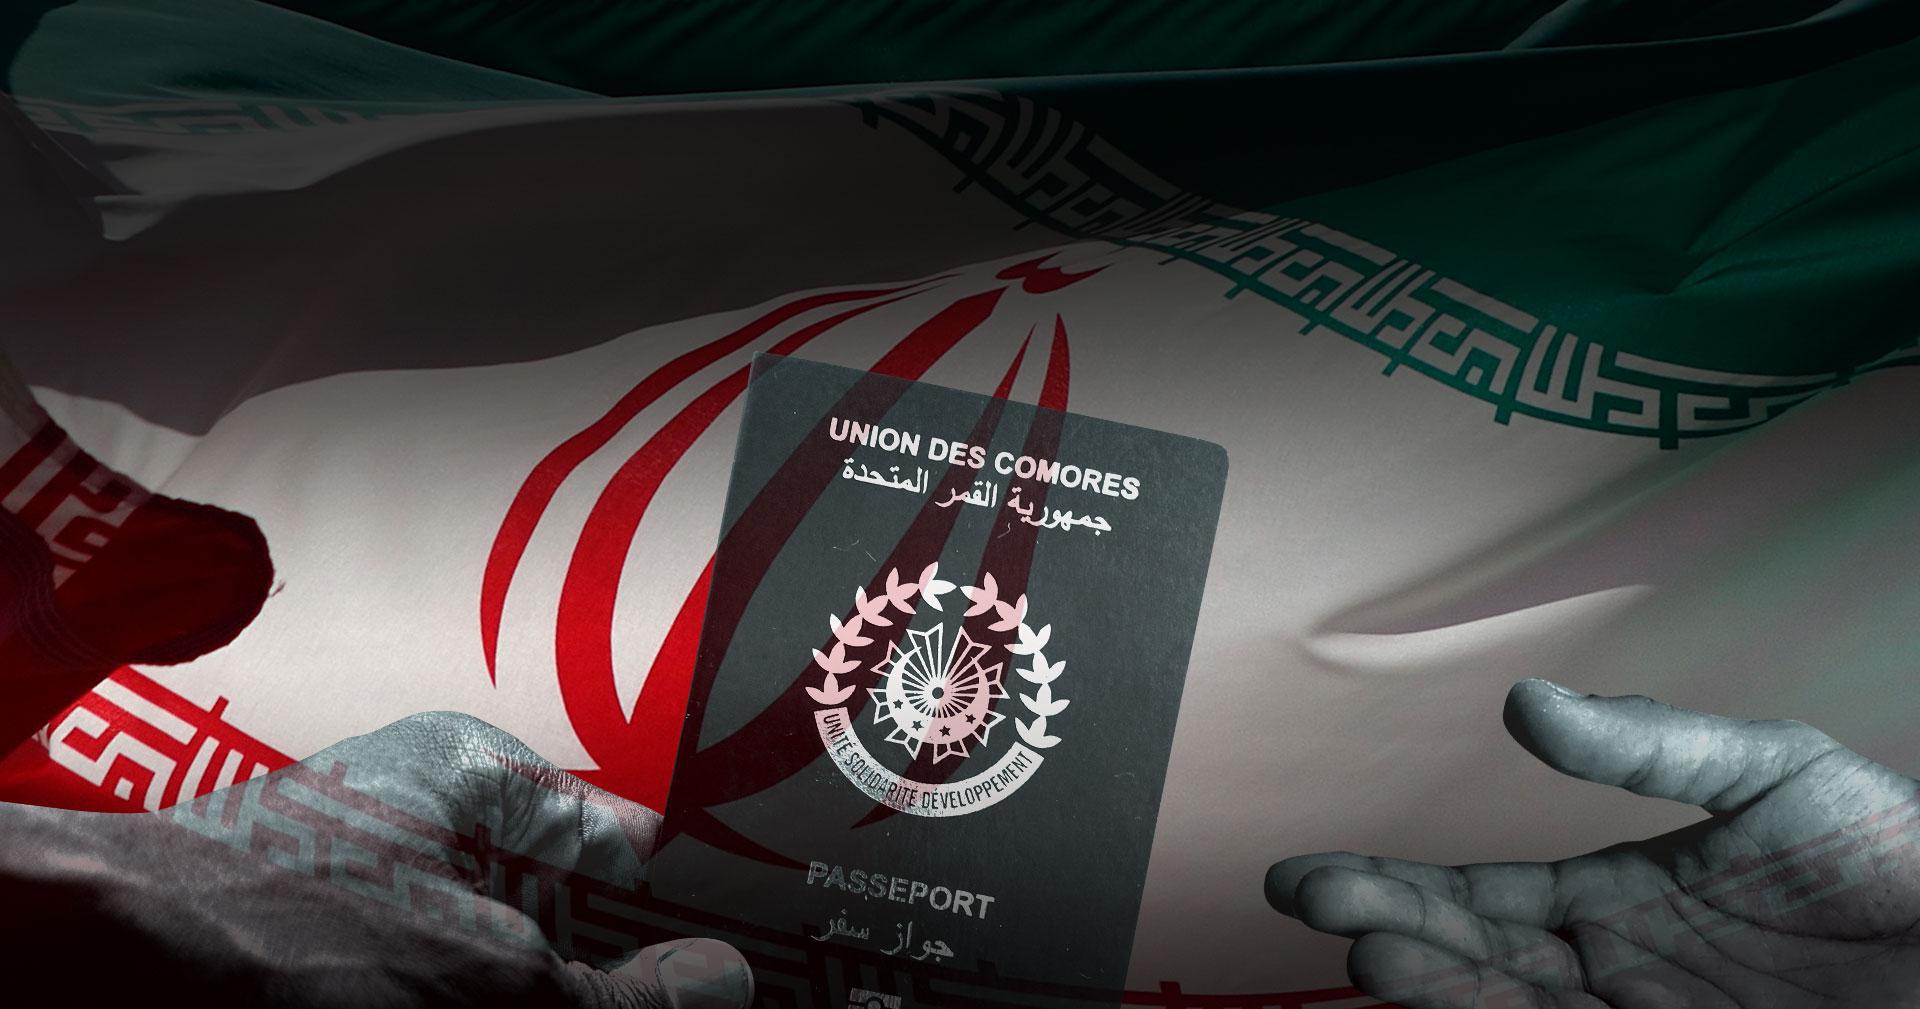 ifmat - As sanctions bit, Iranian executives bought African passports